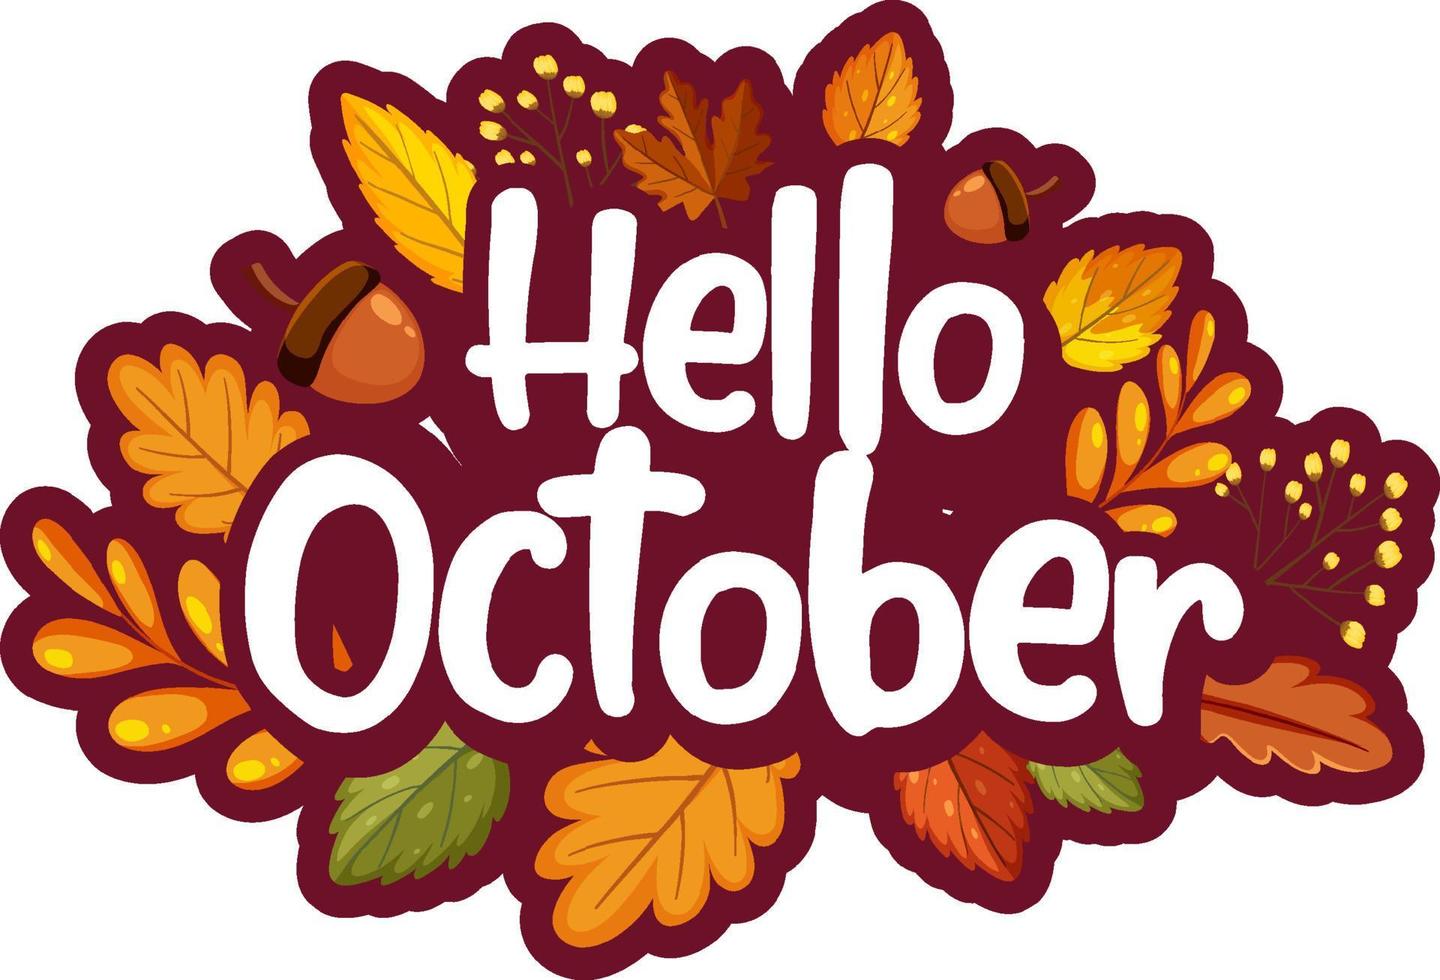 hallo oktober met sierlijke herfstbladeren vector